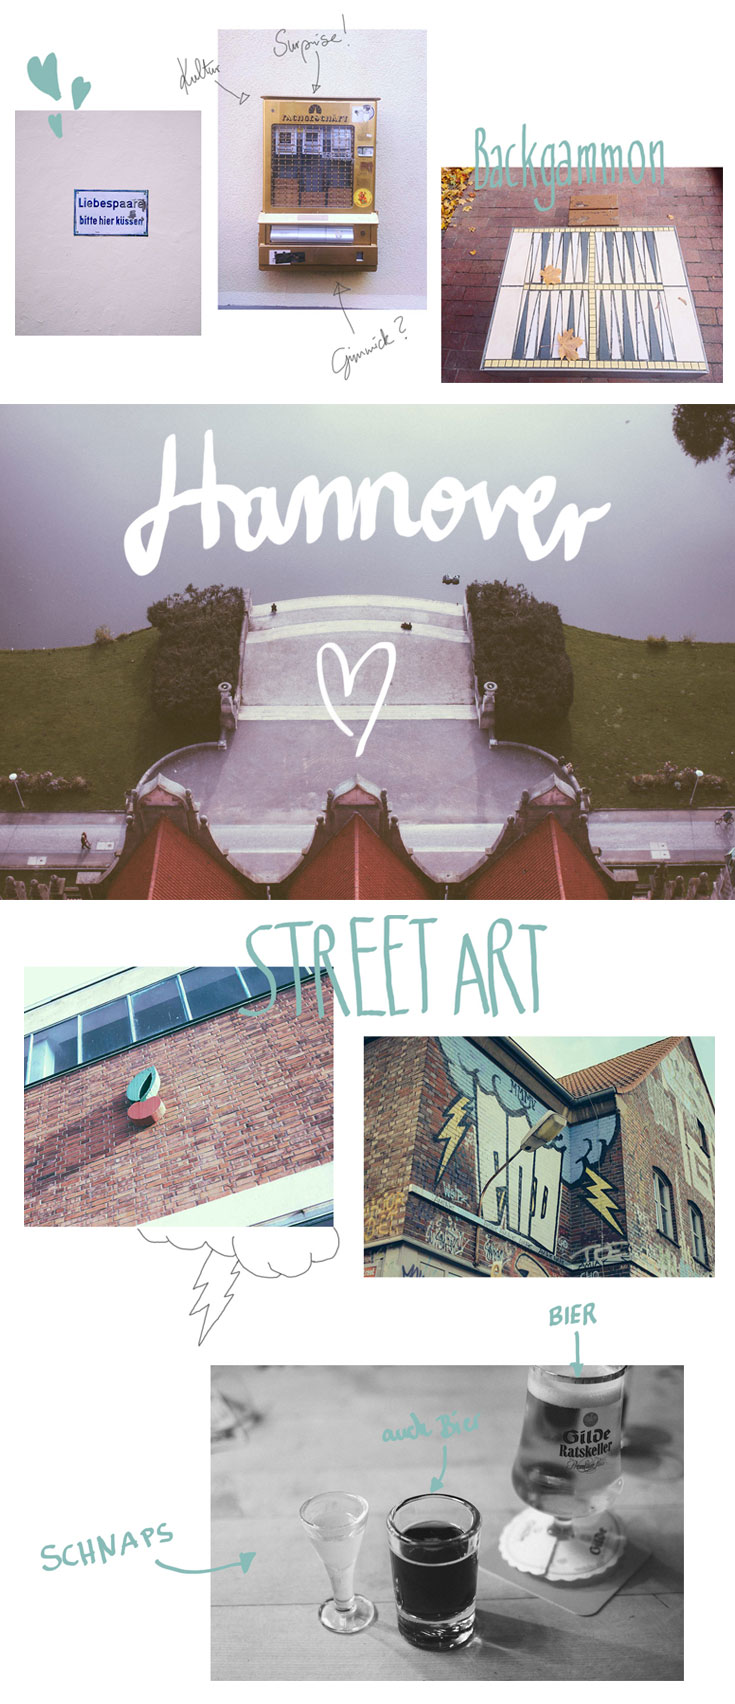 Hannover ist cooler als man denkt - Street Art, Flohmärkte, Vintage Shops, Architektur und Kultur machen die Stadt bereisenswert